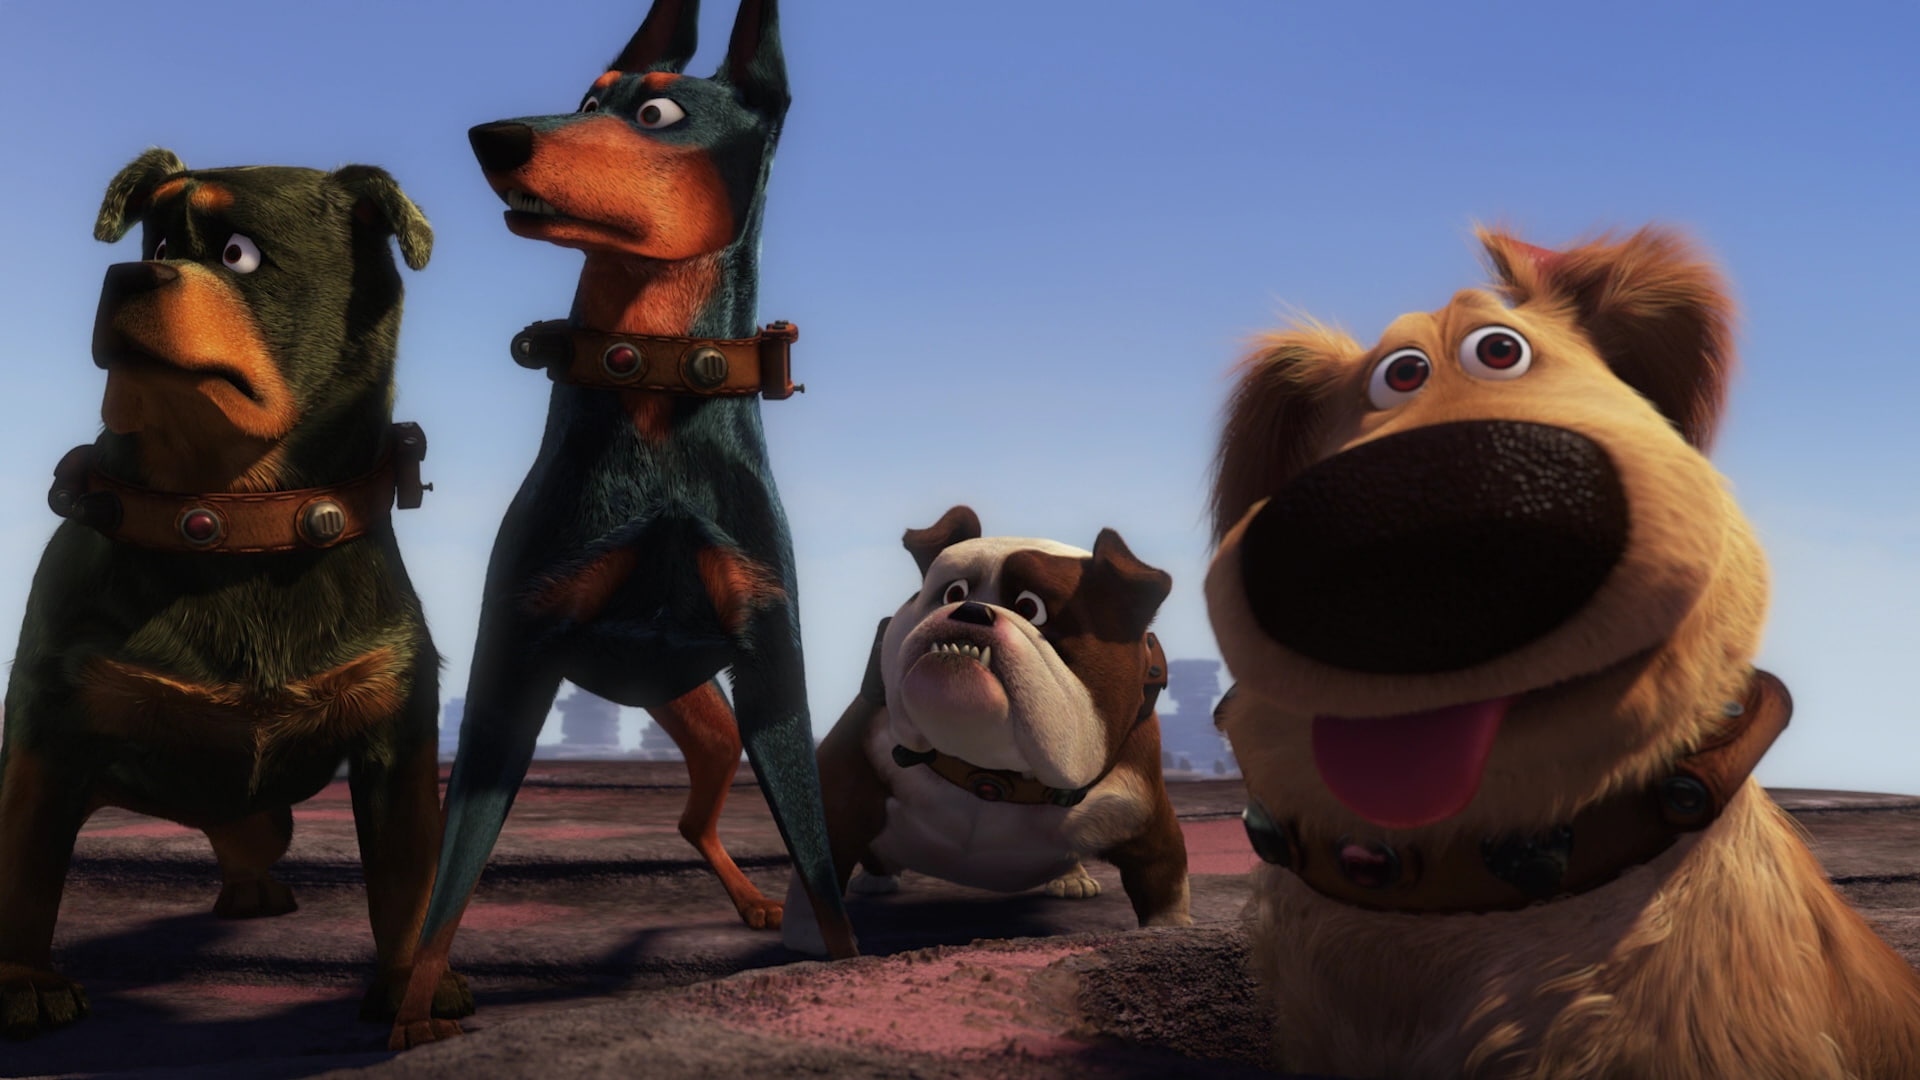 movies, Up (movie), dog, animated movies, Pixar Animation Studios